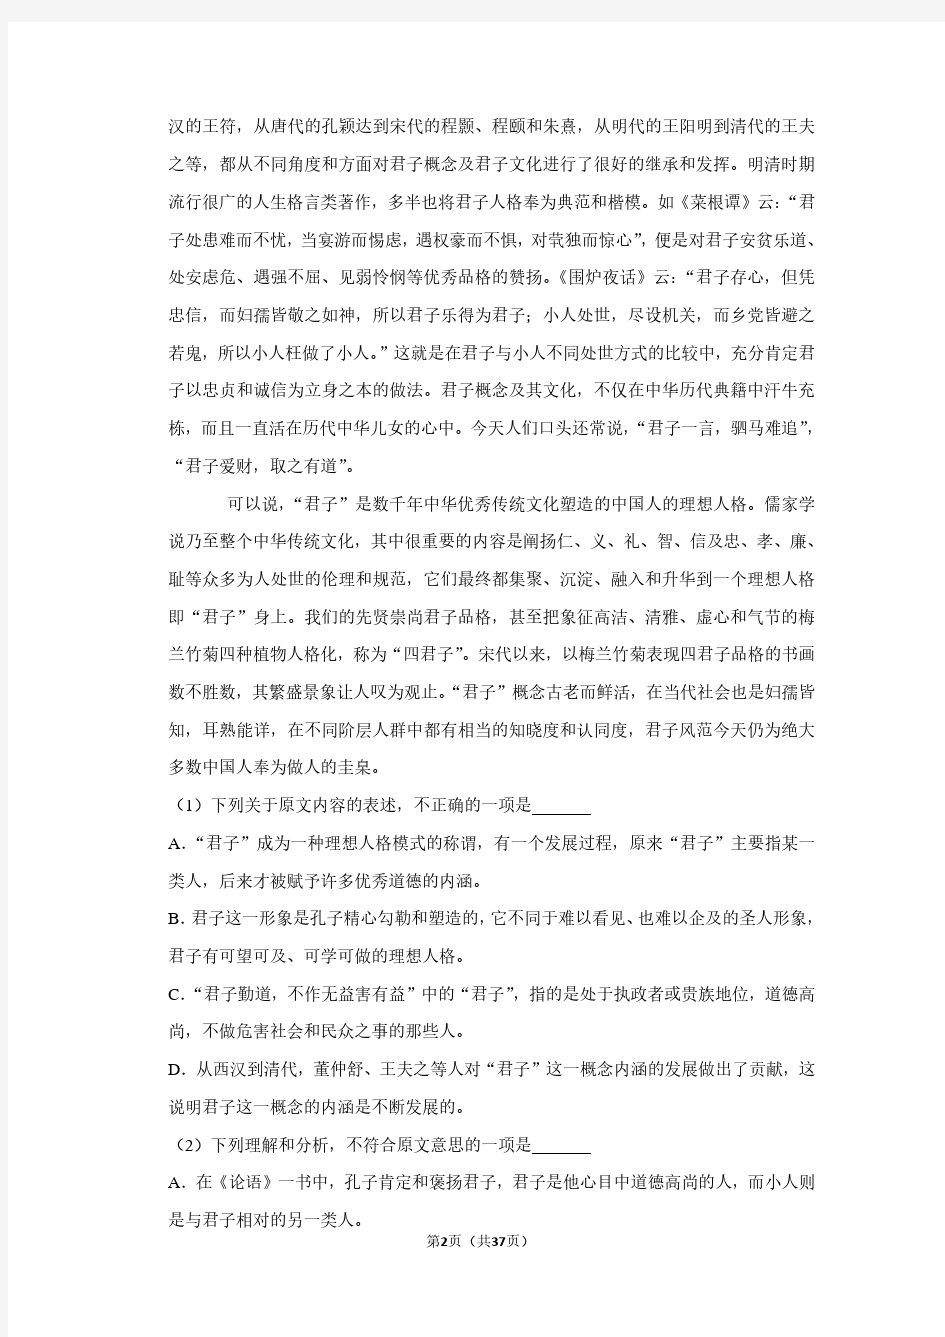 2019年湖北省名校联盟高考语文模拟试卷(三)(3月份)